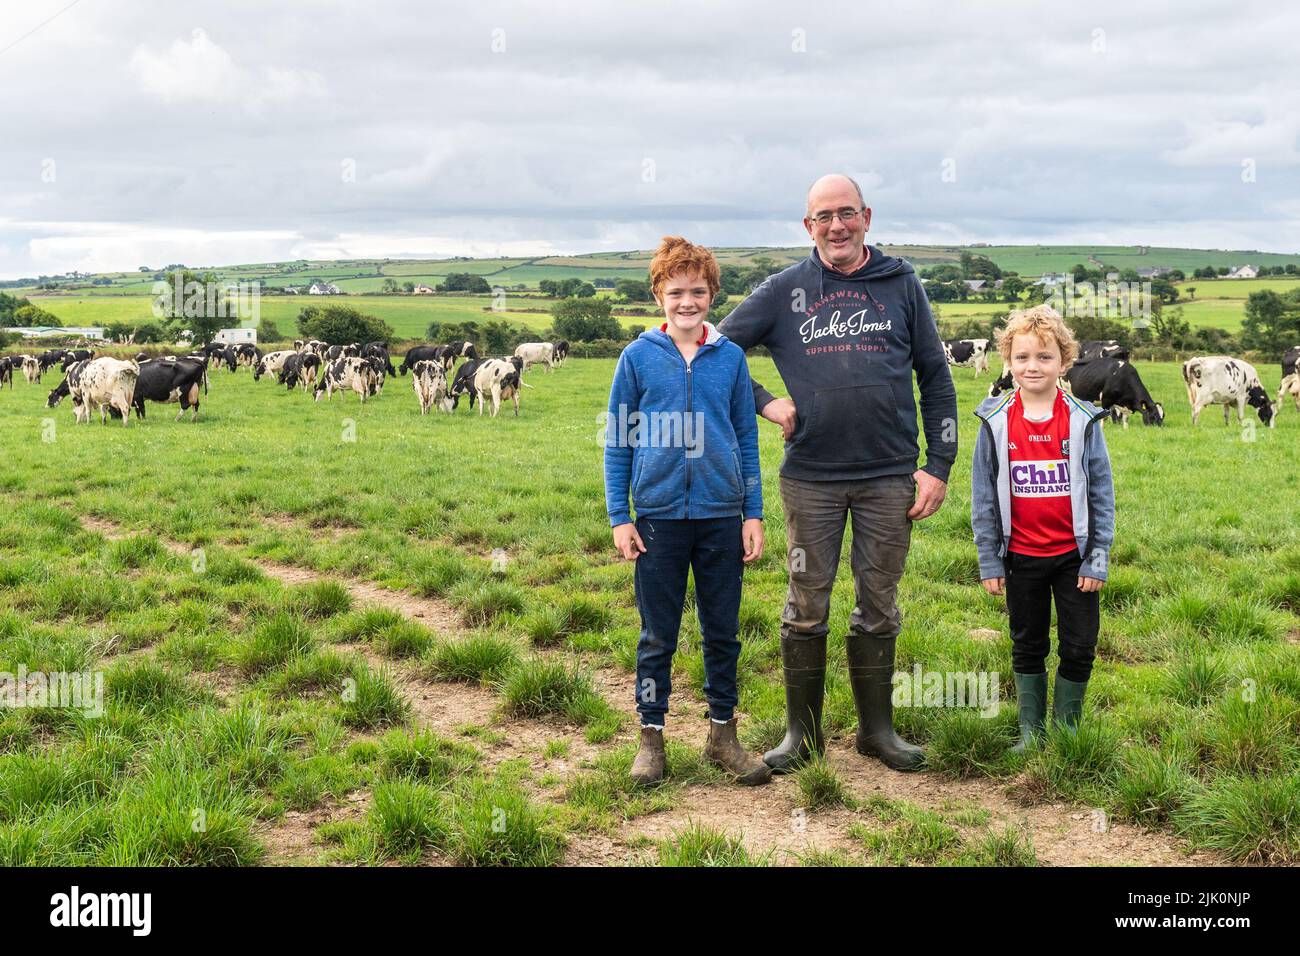 Timoleague, West Cork, Irlanda. 29th de julio de 2022. DJ Keohane, granjero de productos lácteos, cruza su manada de vacas lecheras durante los R600 cerca de Timoleague después de ordeñar, con uno de sus hijos, Daniel, ayudando. Llega cuando el gobierno acordó anoche una reducción del 25% en las emisiones para el sector agrícola. DJ ordeñe 166 vacas en 200 acres.He es fotografiado con sus dos hijos, Daniel y James. Crédito: AG News/Alamy Live News Foto de stock